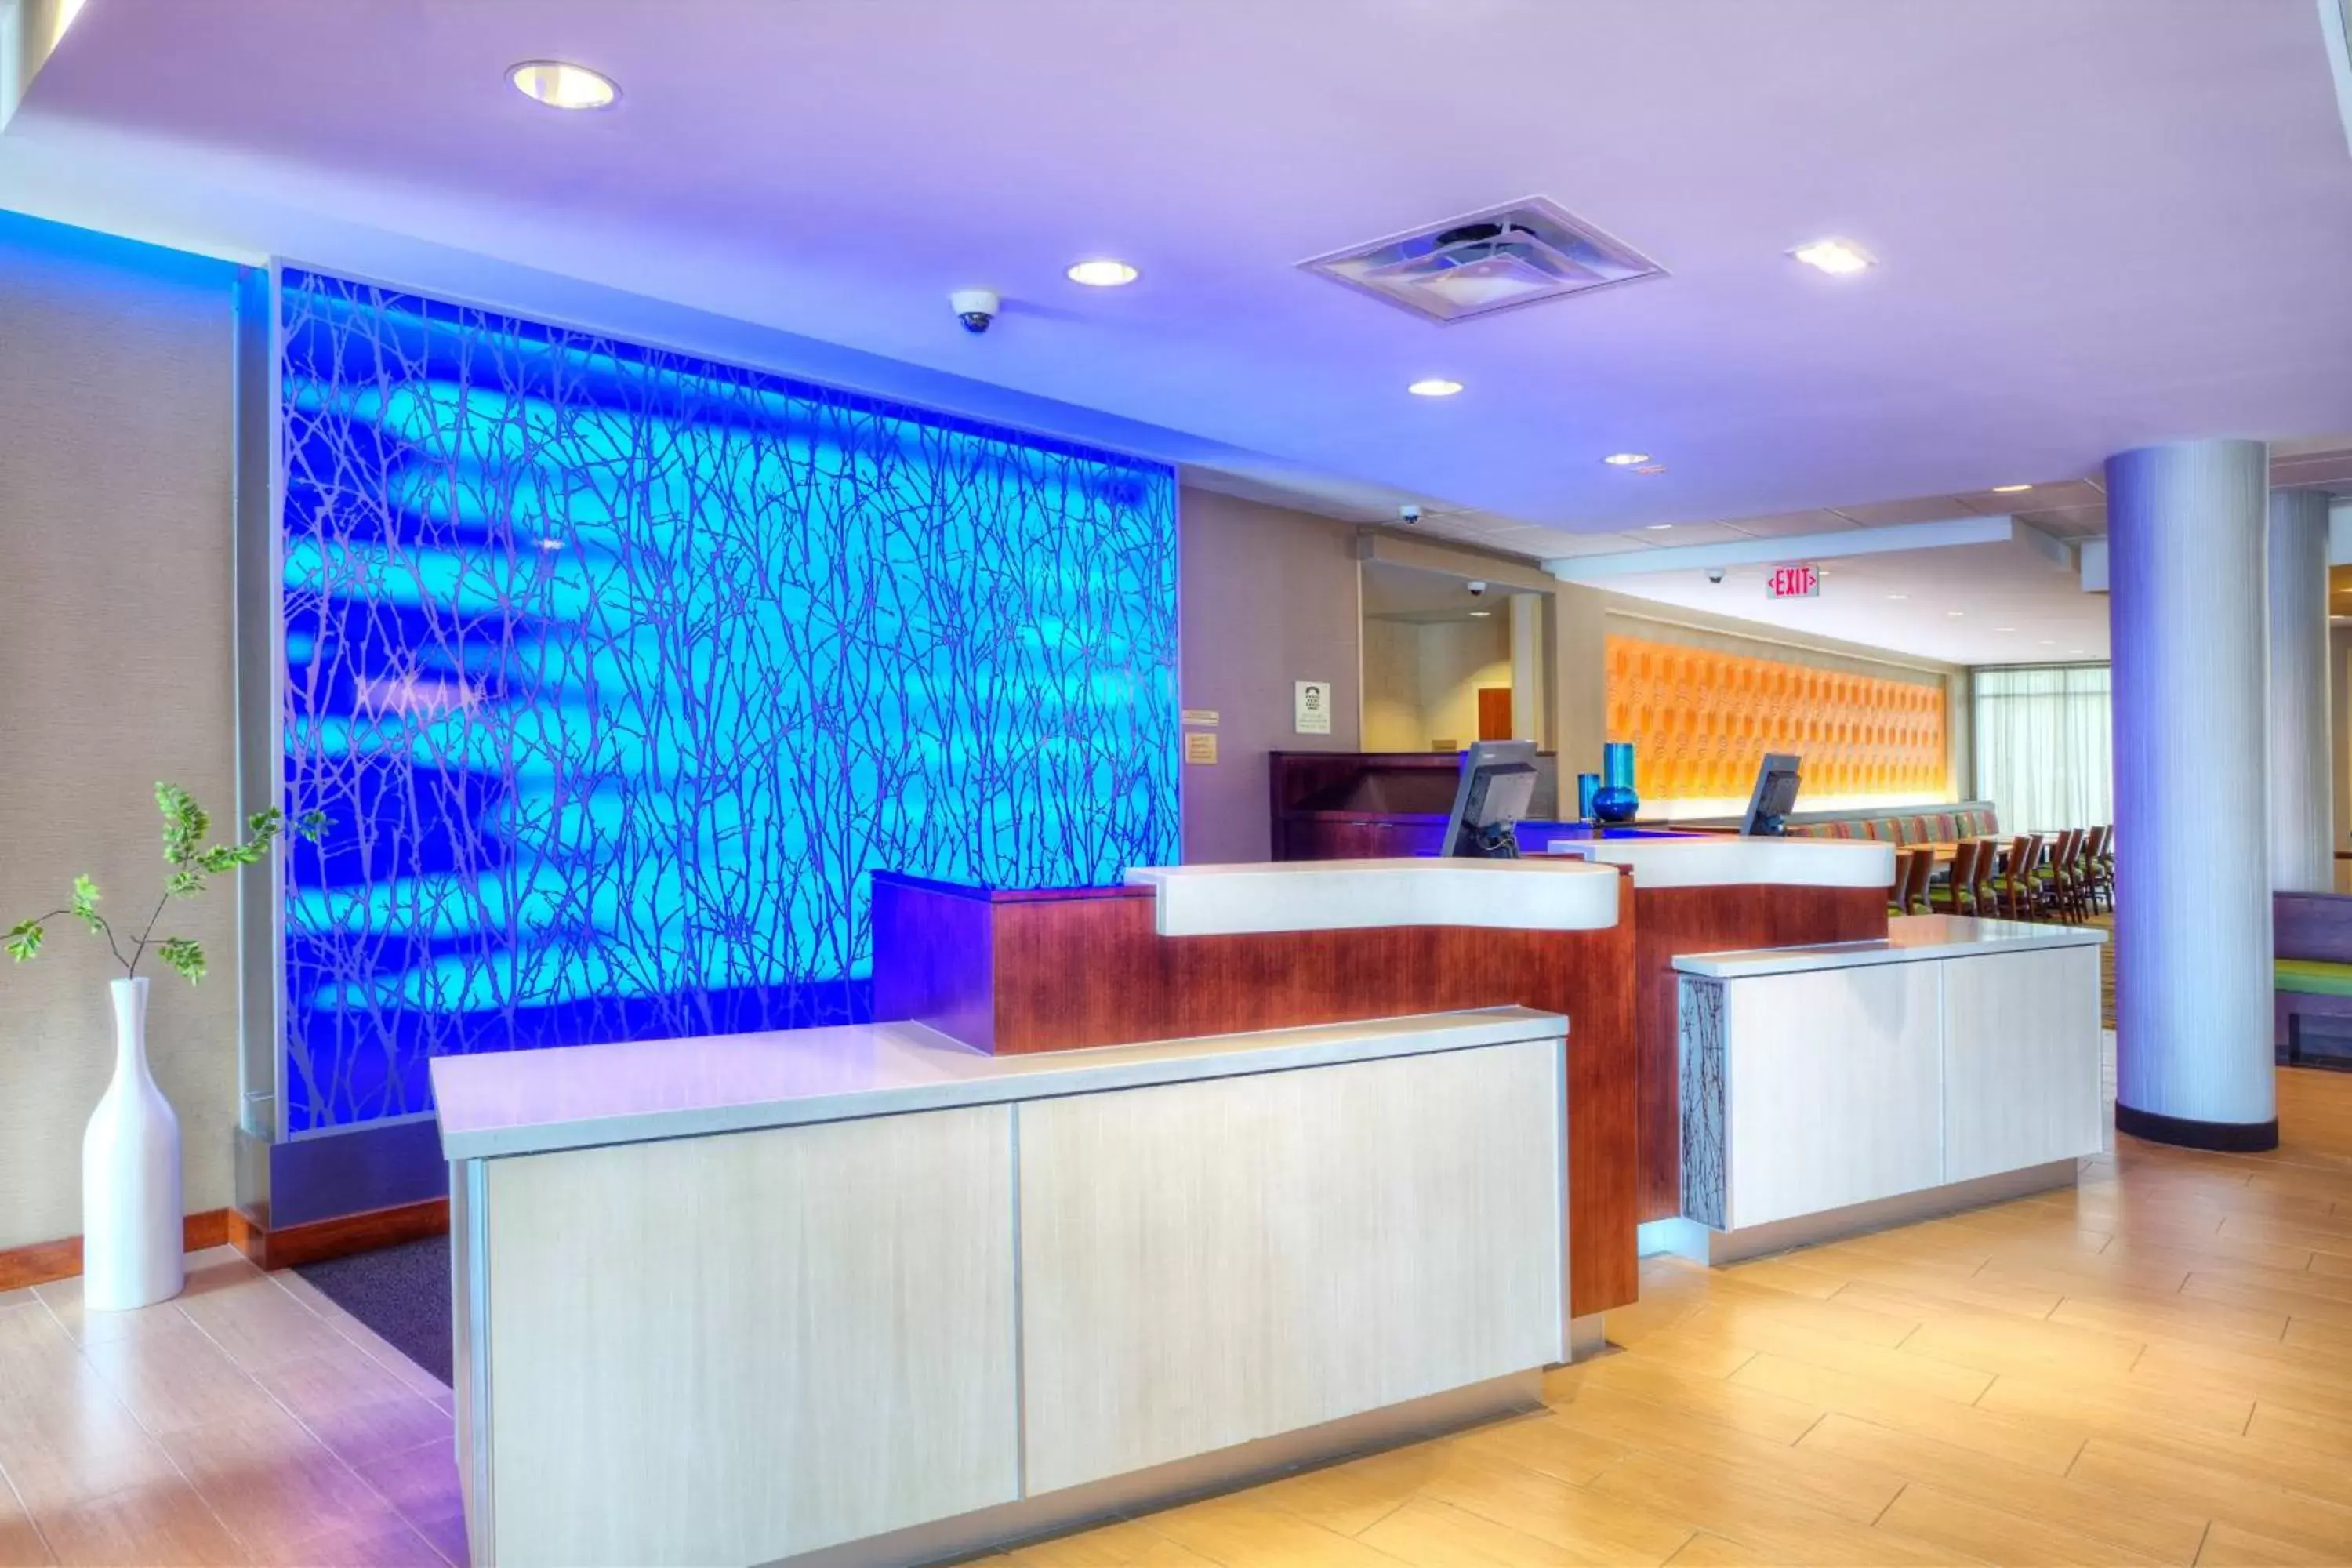 Lobby or reception, Lobby/Reception in Fairfield Inn & Suites by Marriott Austin San Marcos